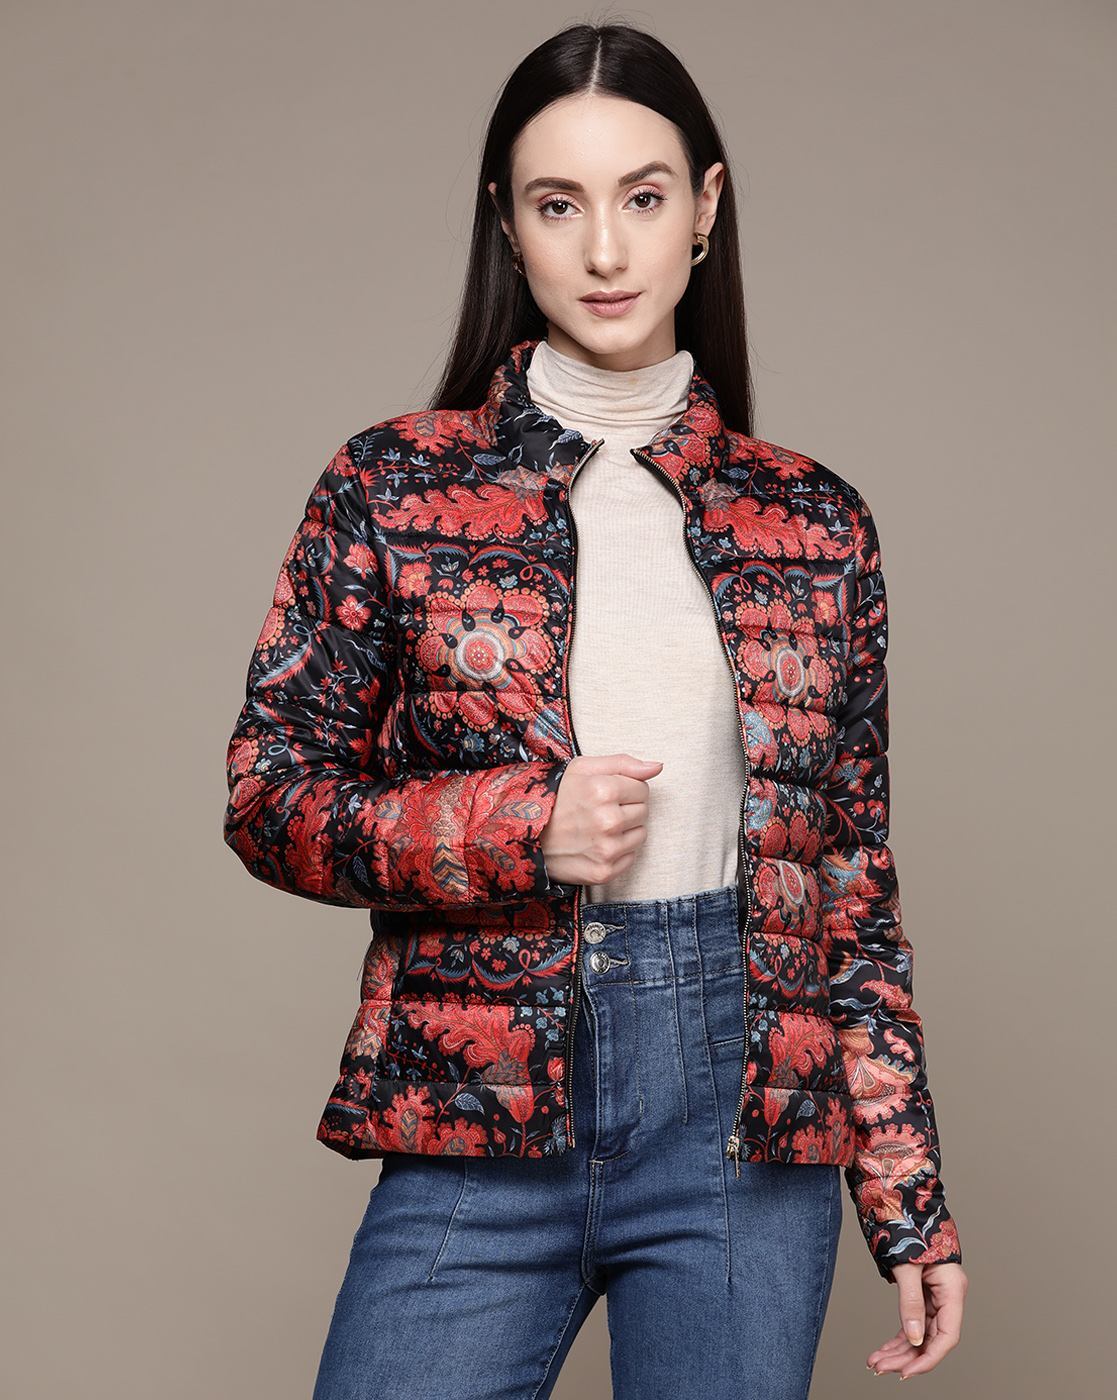 Buy Black Jackets & Coats for Women by LABEL RITU KUMAR Online